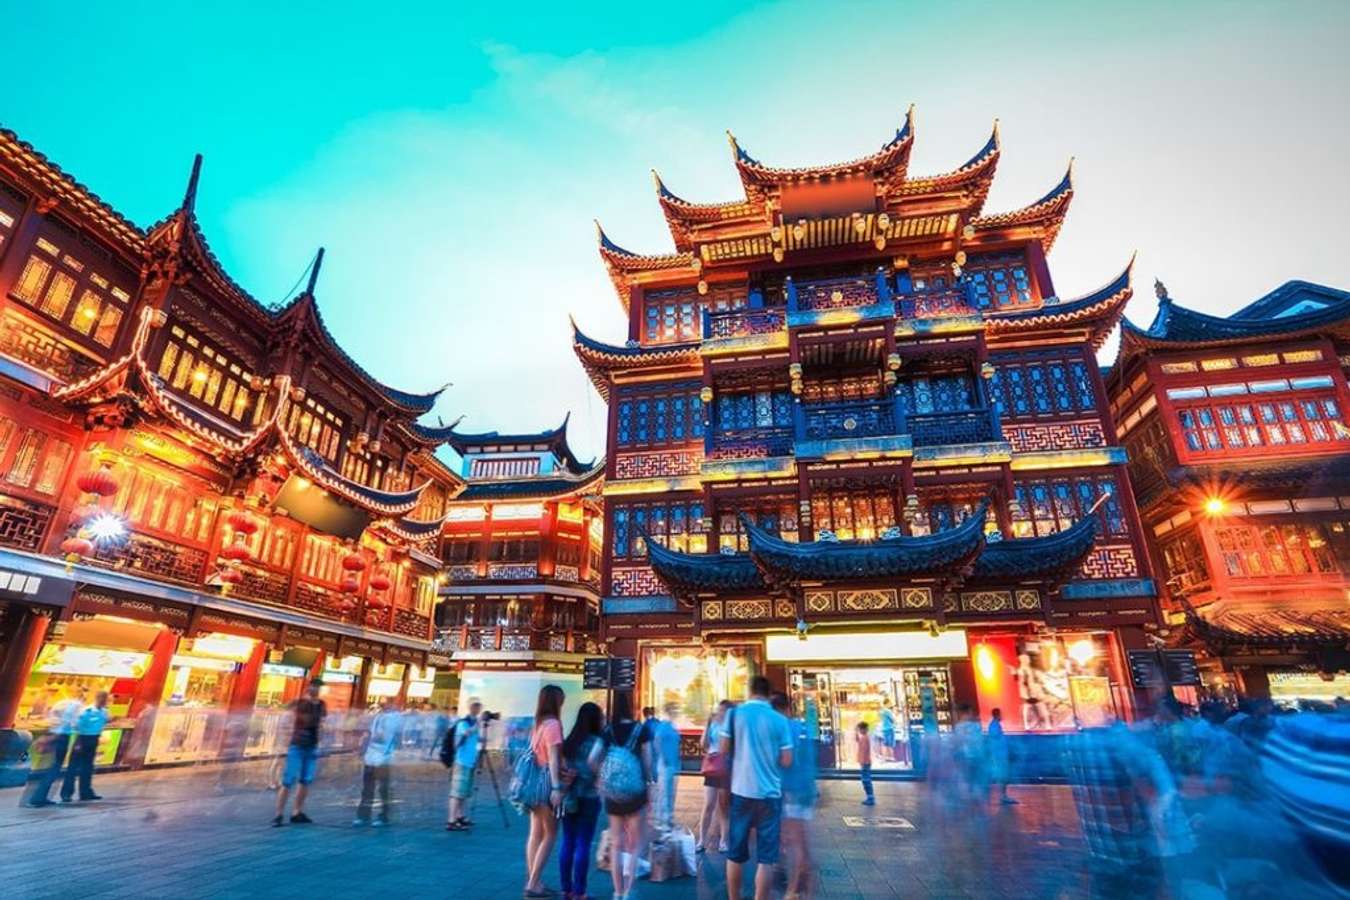 Khám phá chùa Phật Ngọc Thượng Hải - nét đẹp thanh bình của Trung Hoa xưa